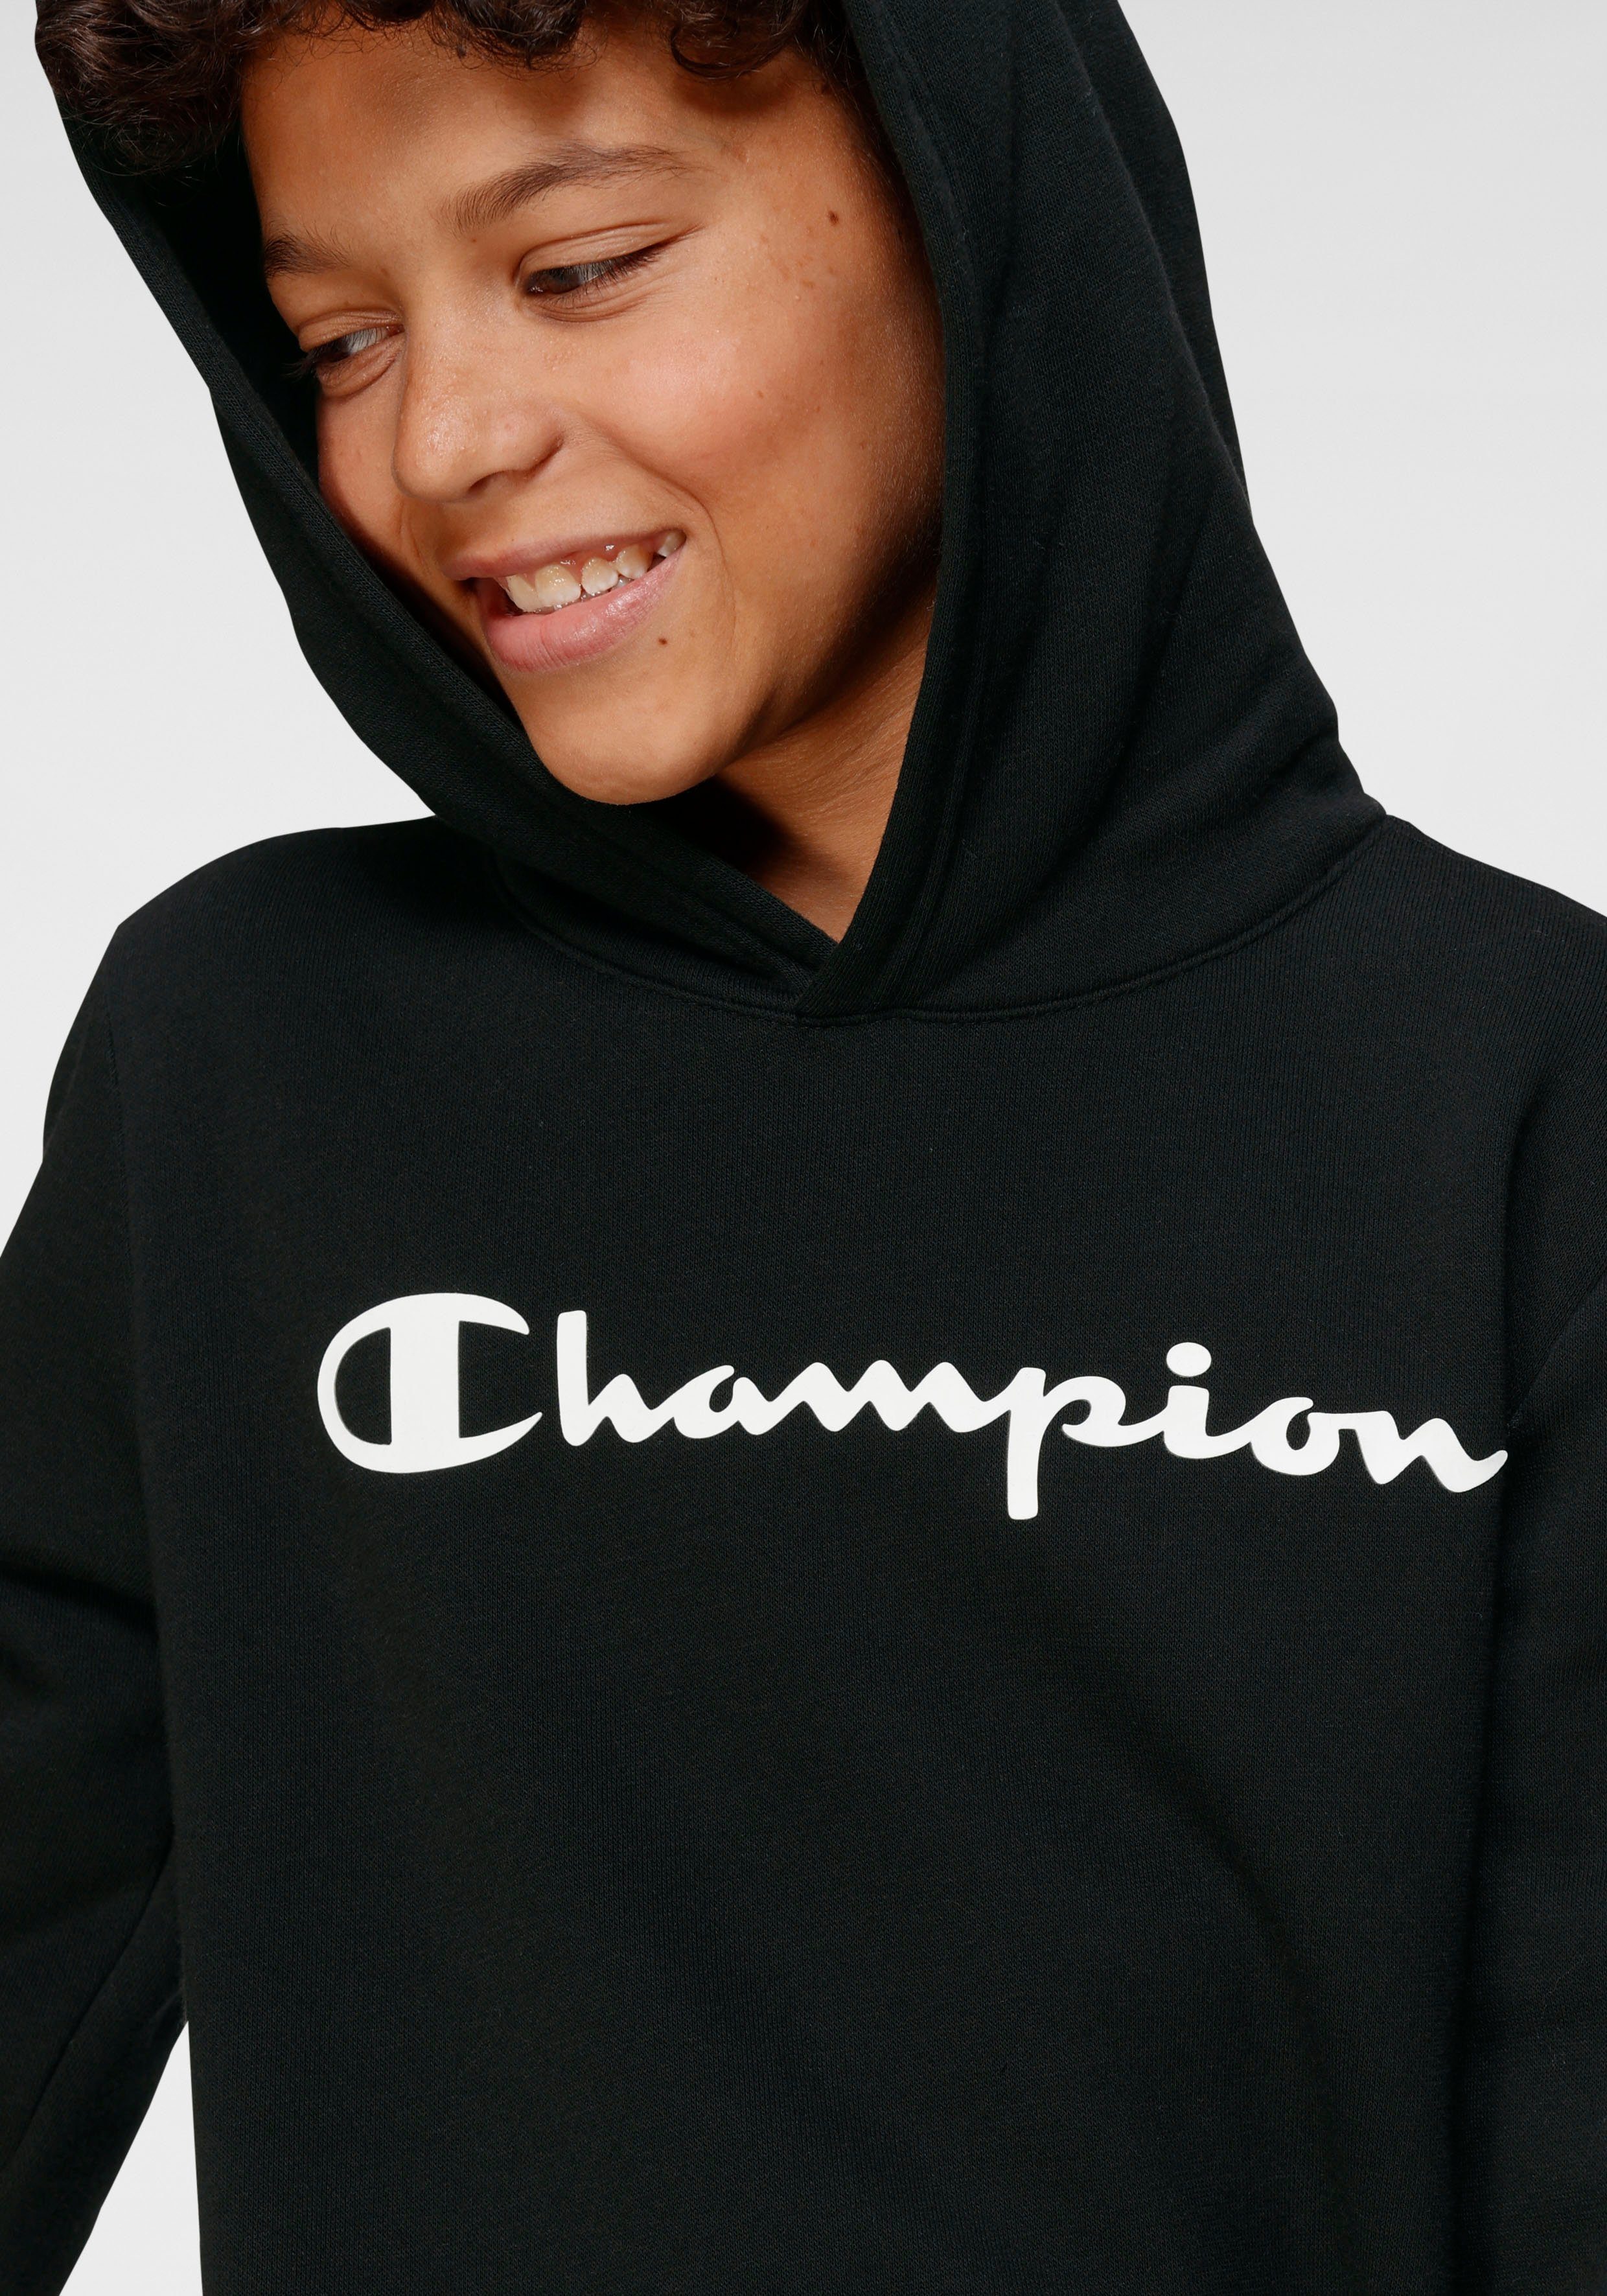 Hooded Champion schwarz Sweatshirt Kapuzensweatshirt